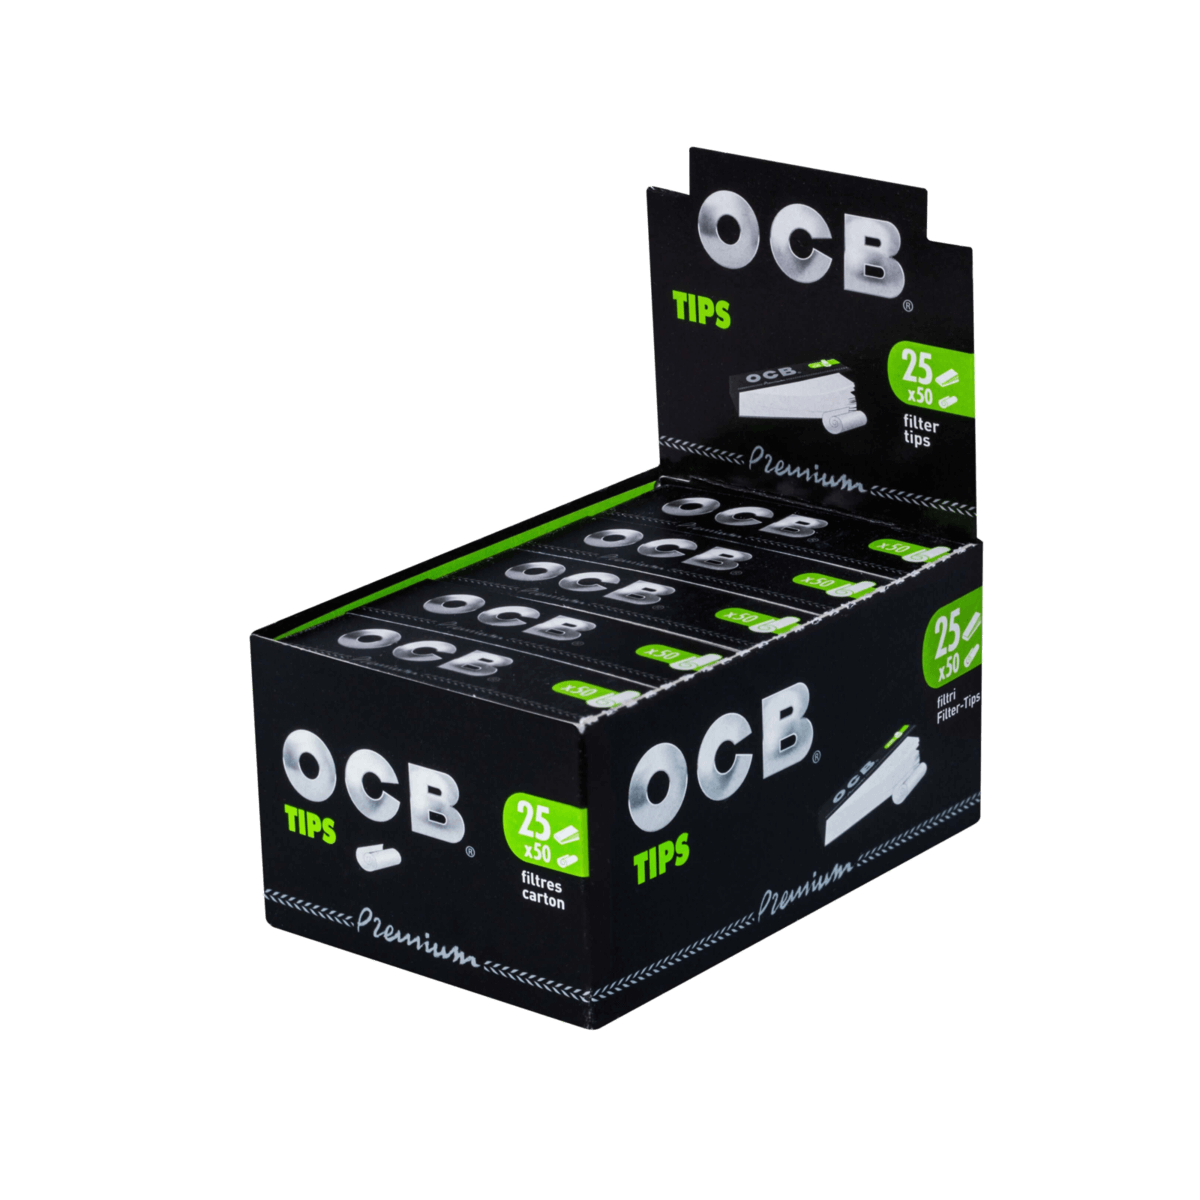 OCB Premium Filter-Tips, Schwarz, Vorperforiert a 50 Tips | 25 Hefte